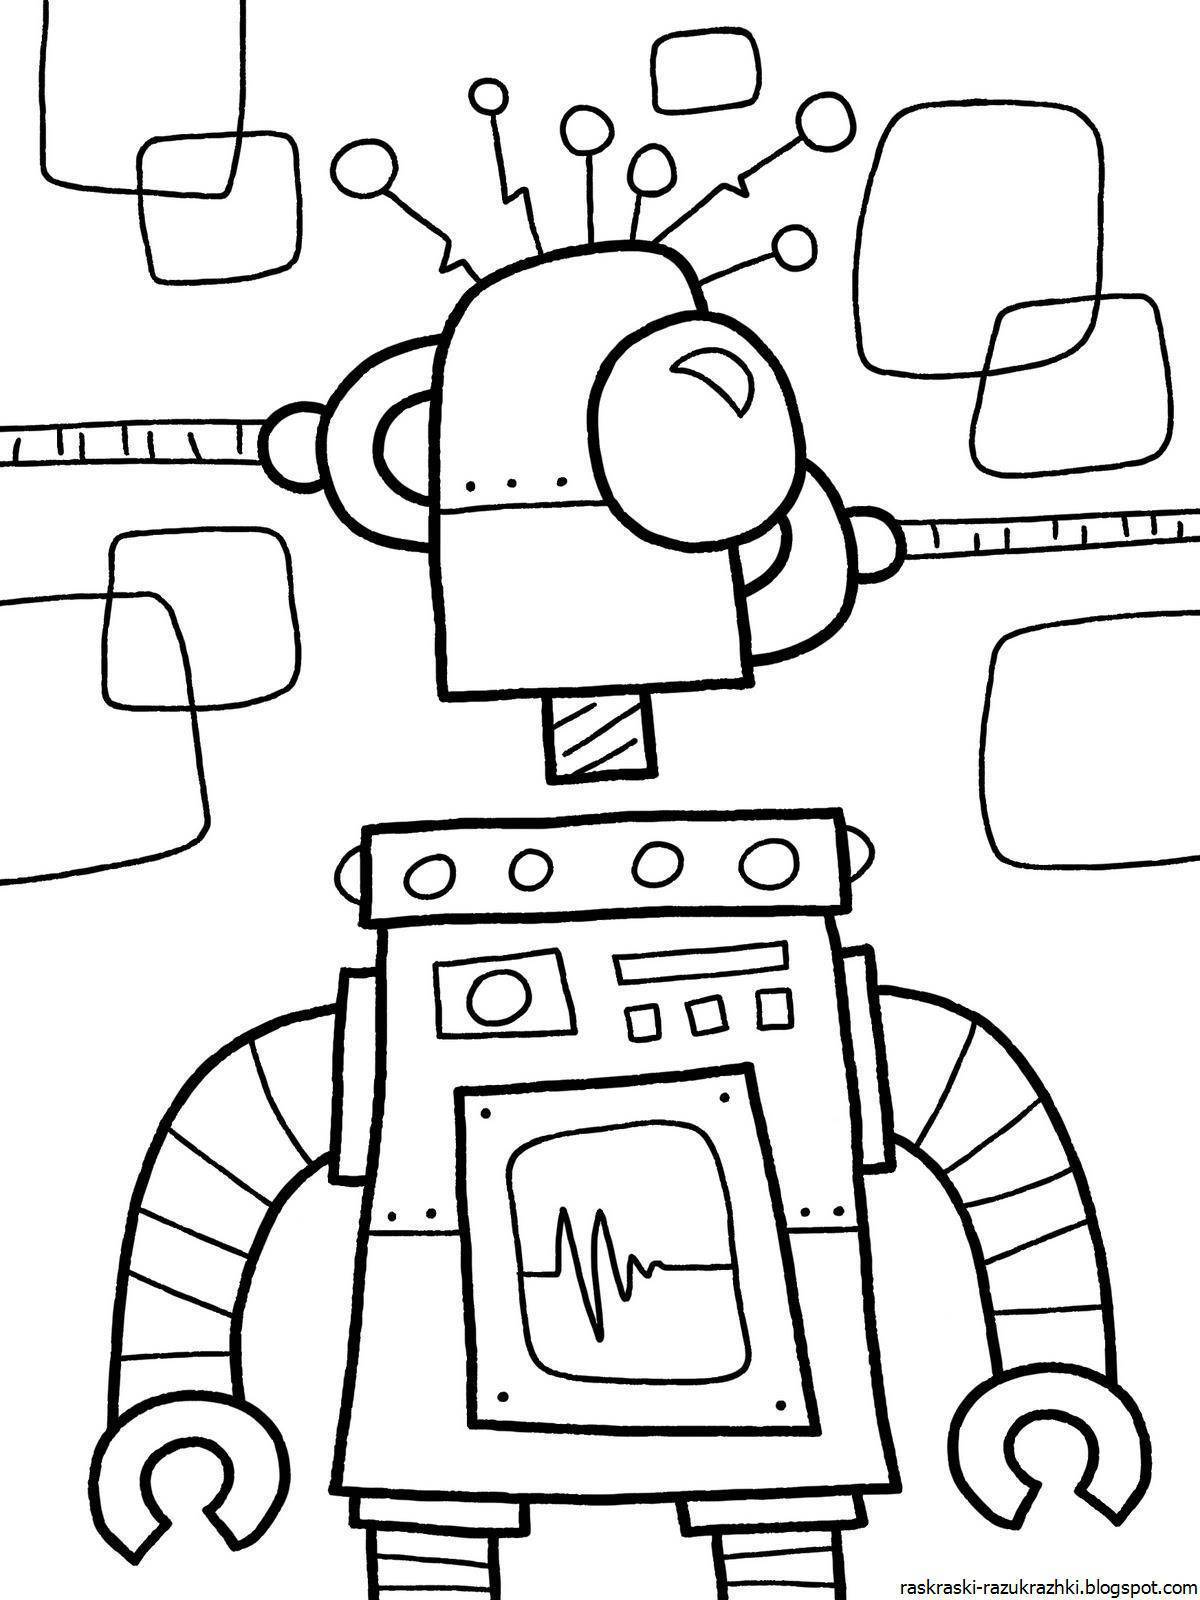 Раскраска робота 3. Раскраски. Роботы. Робот раскраска для детей. Тобот раскраска для детей. Hj,jnраскраска для детей.